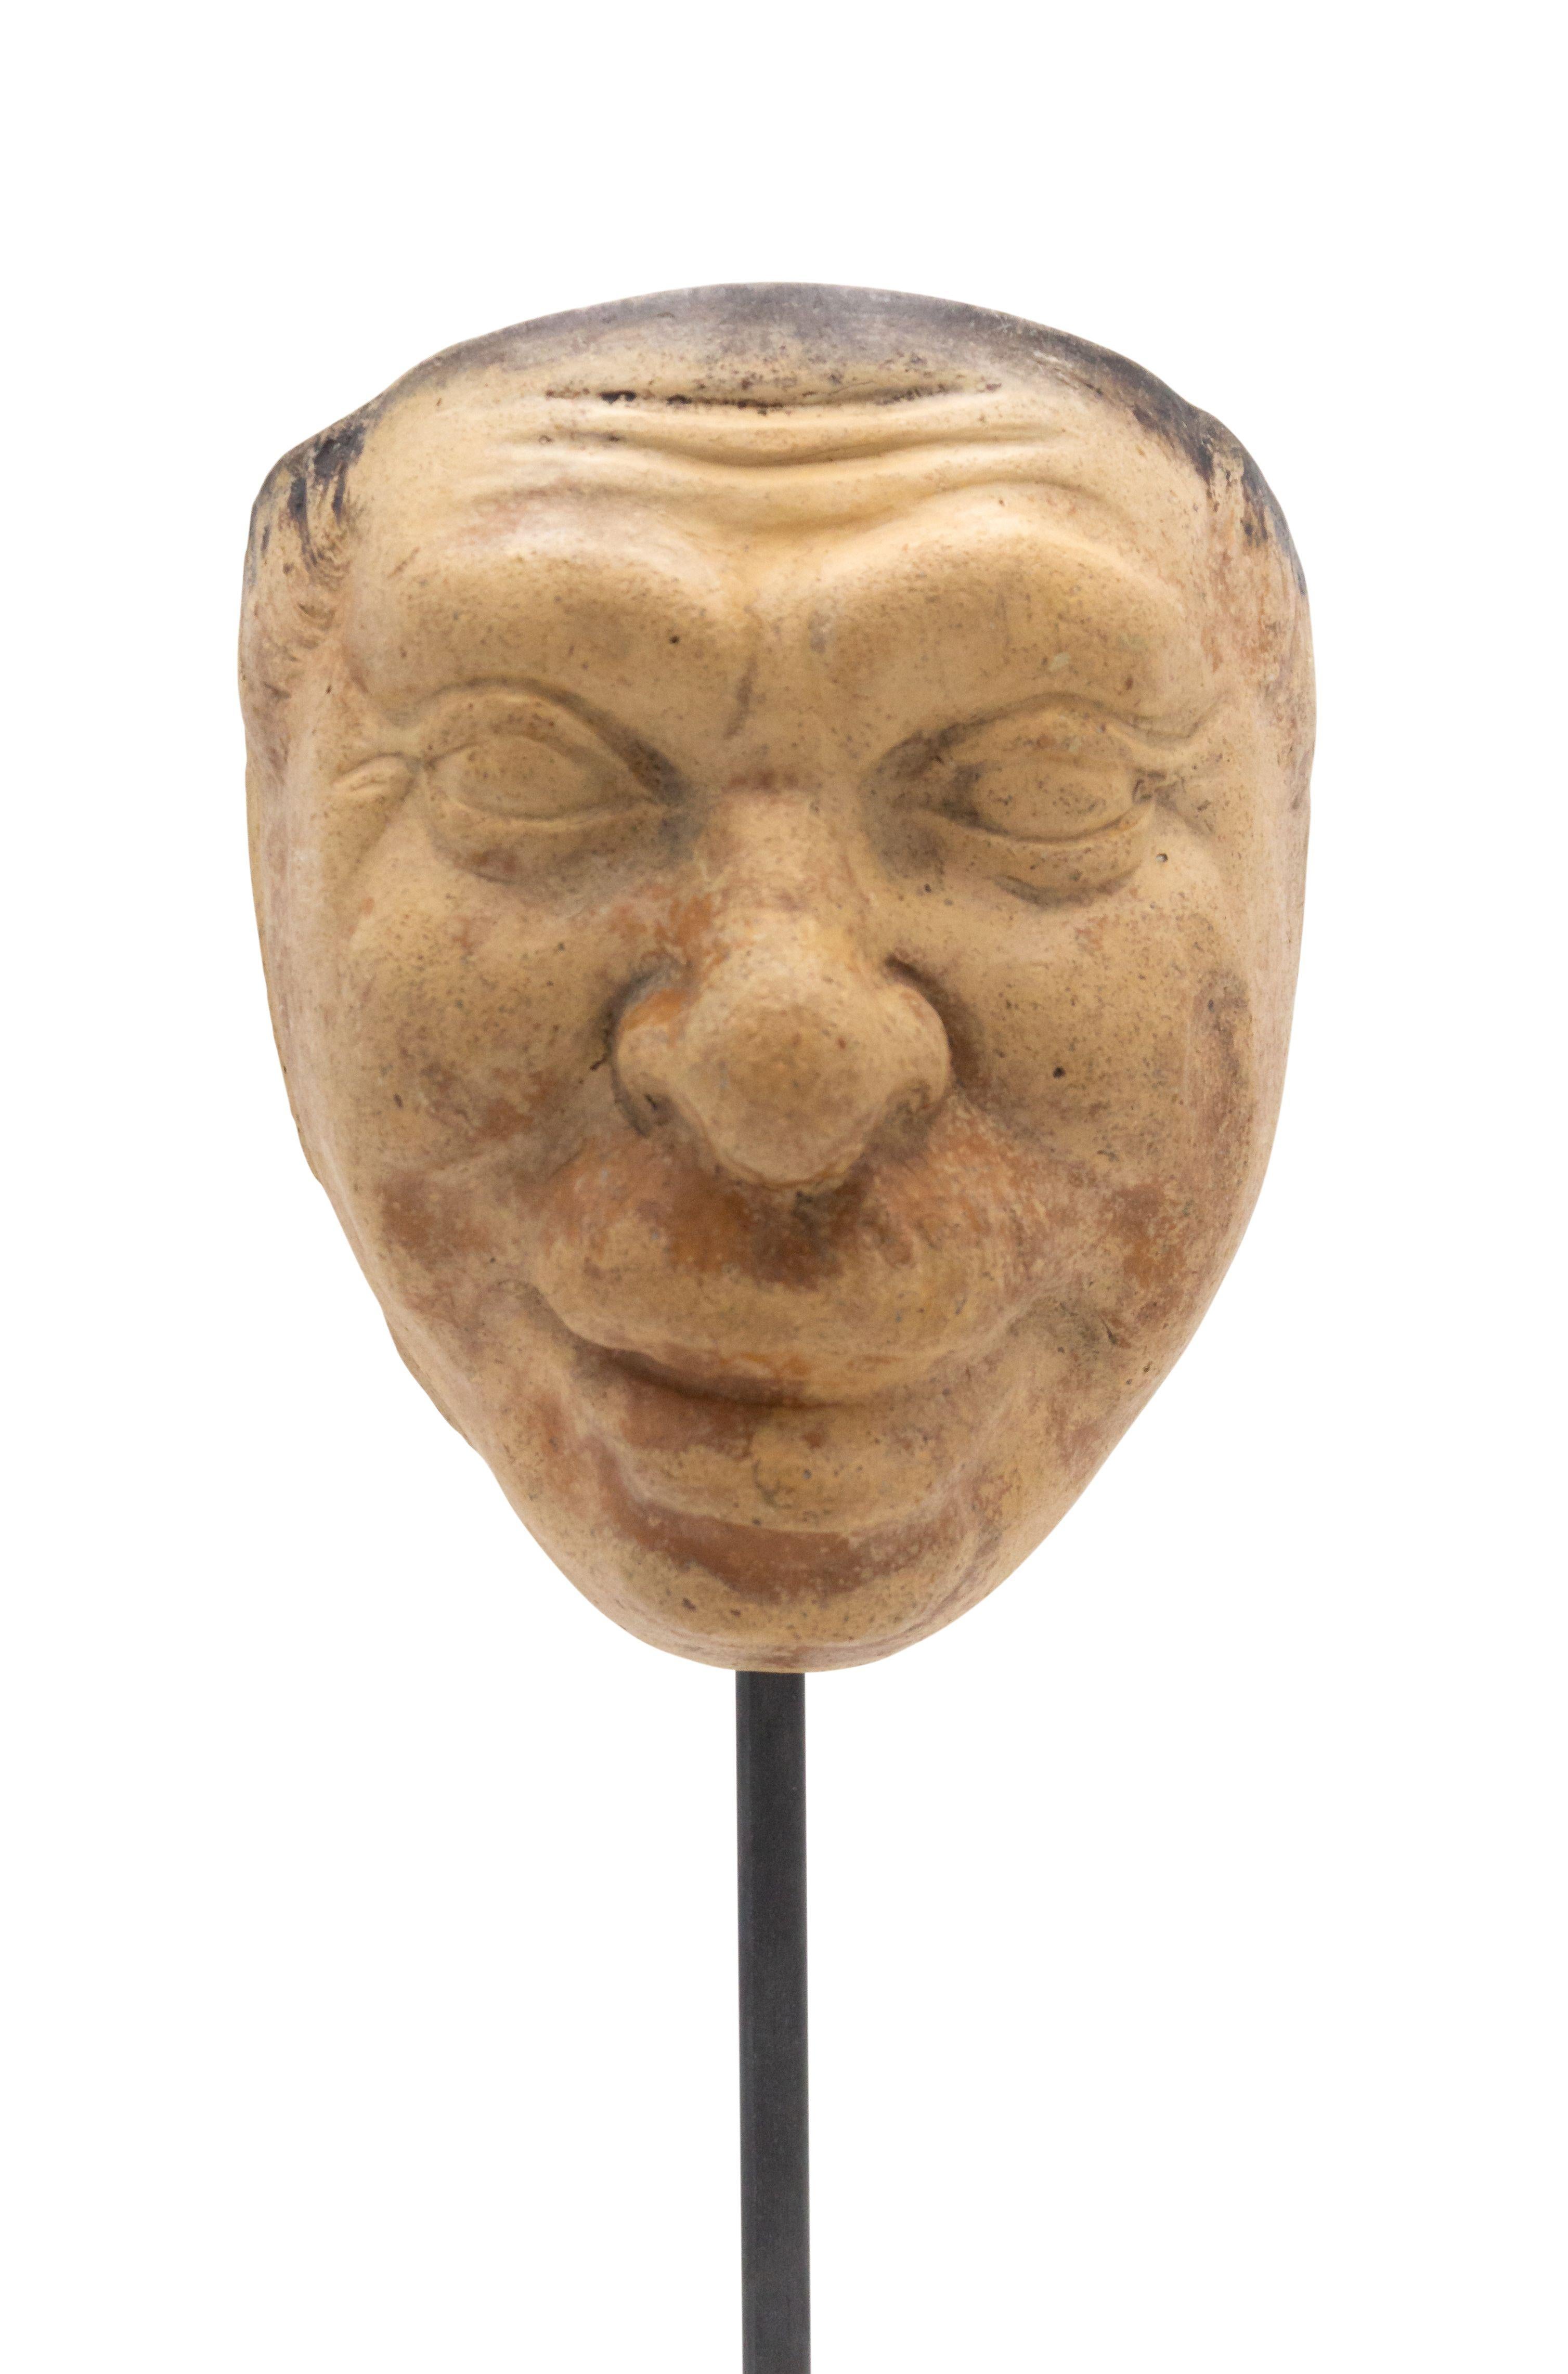 Kontinentaldeutsche (spätes 19. Jh.) Terrakotta-Maskenform eines lächelnden Groteskengesichts mit Schnurrbart auf einem quadratischen schwarzen Marmorsockel (Teil von 39 St. Collection'S).
 